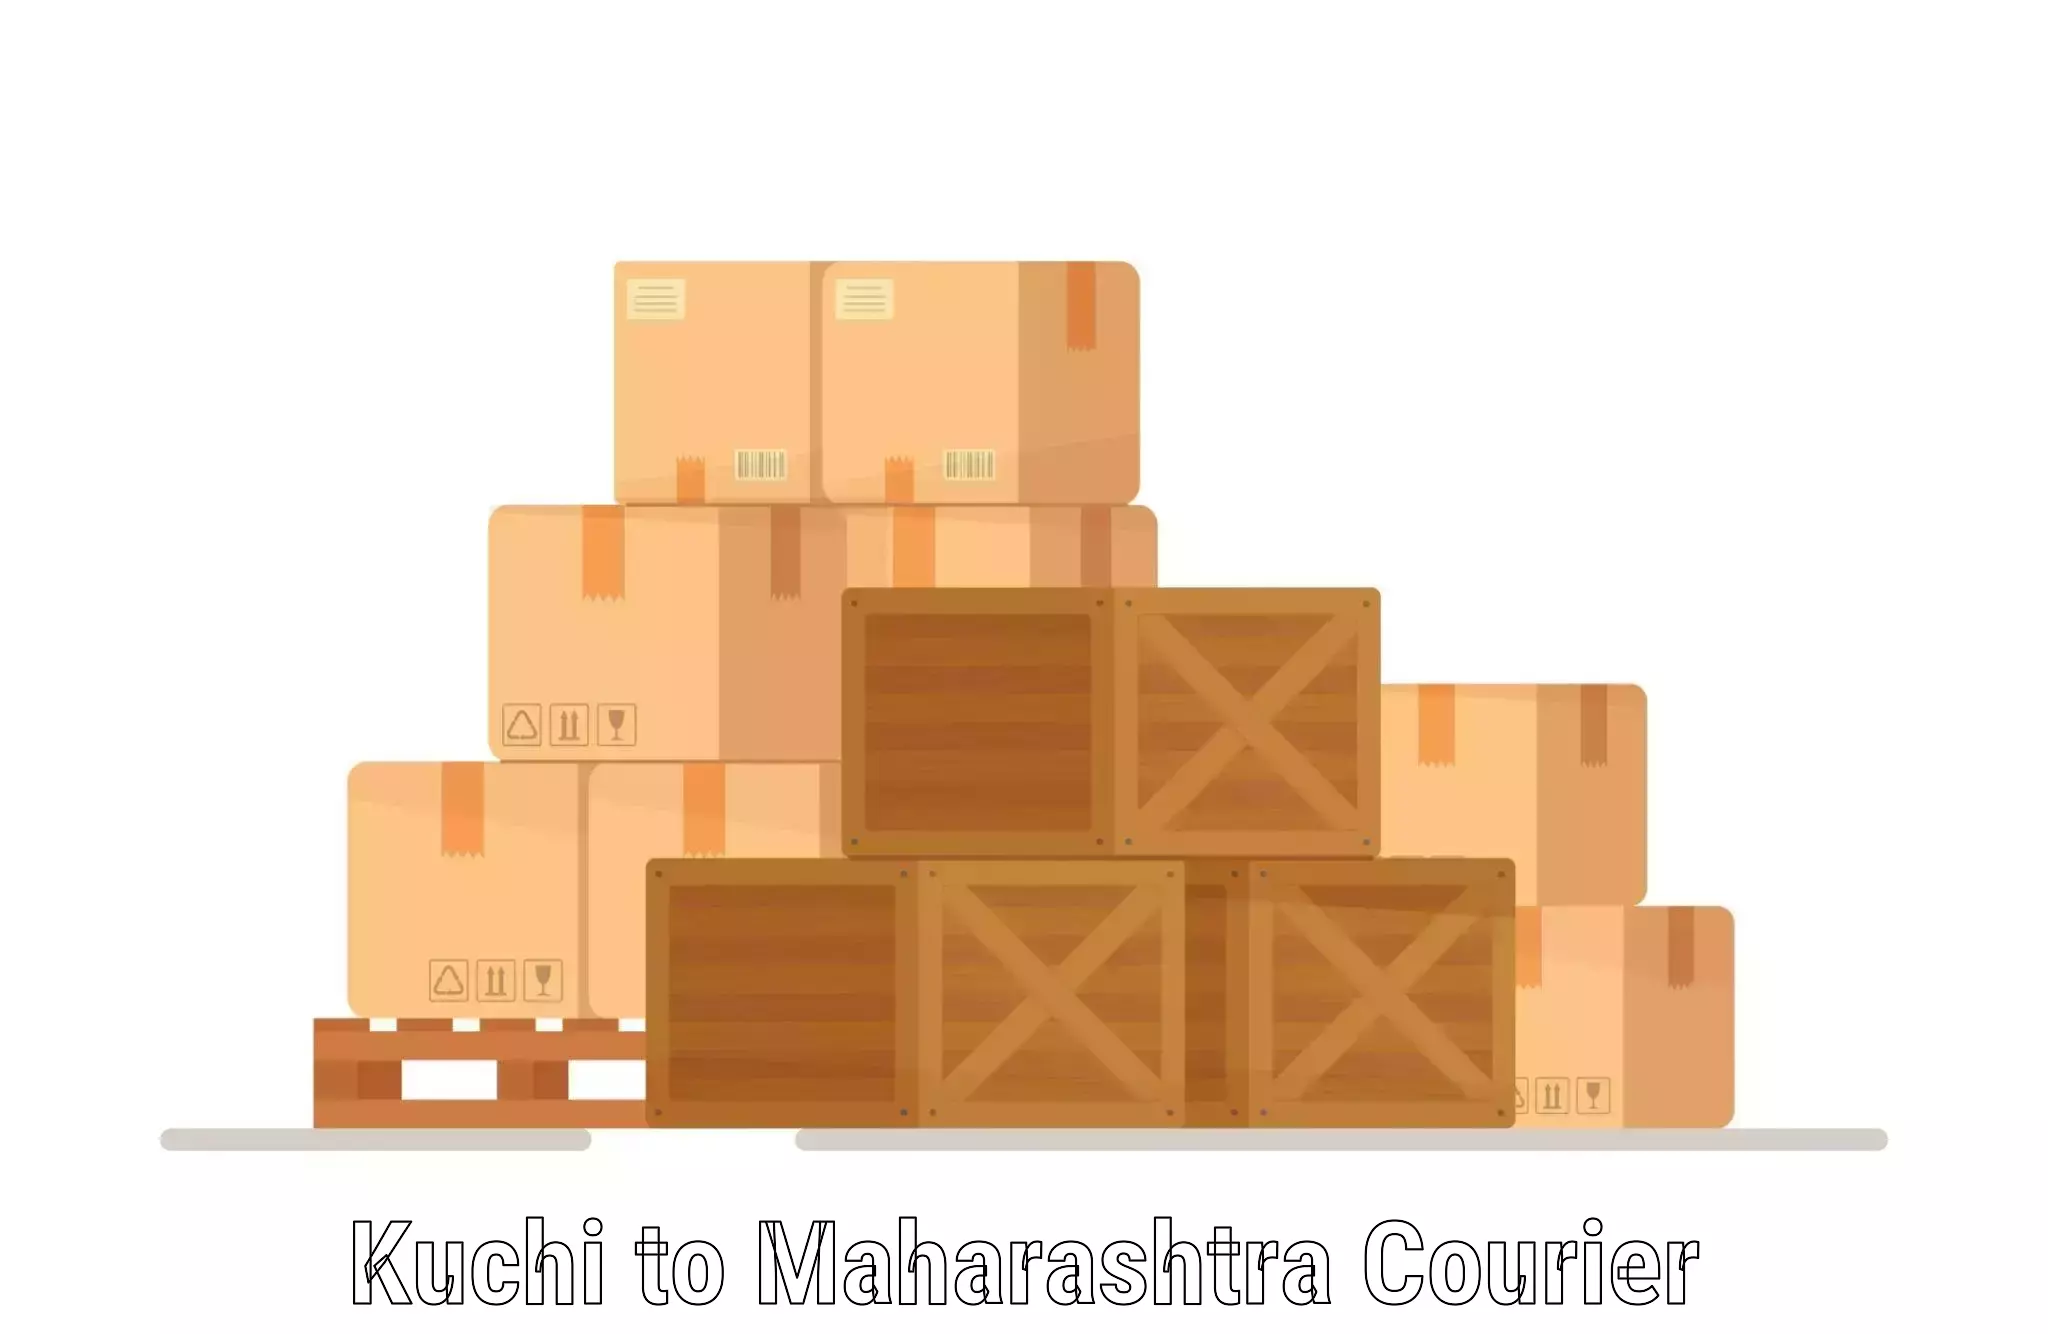 Round-the-clock parcel delivery Kuchi to Maharashtra